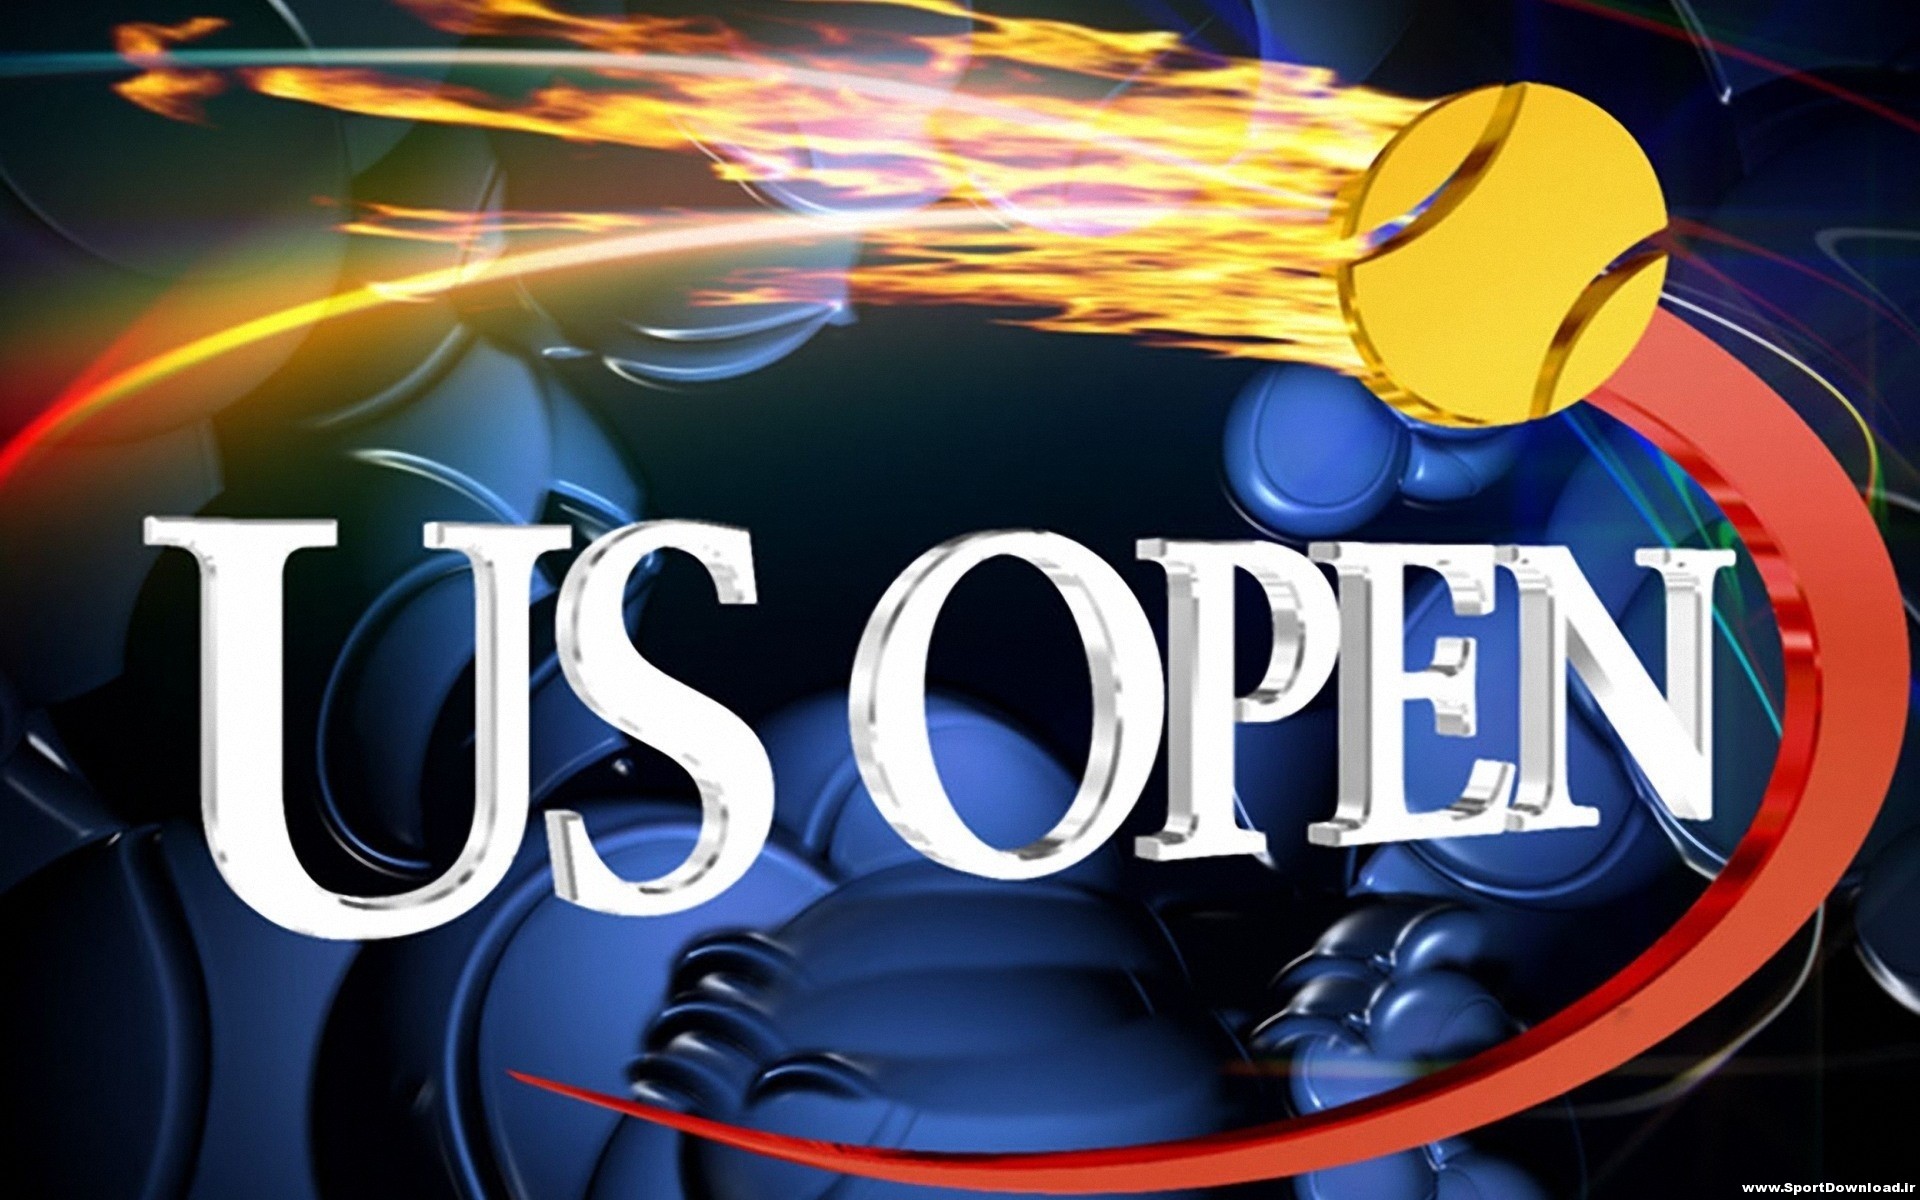 Tennis Us open 2013